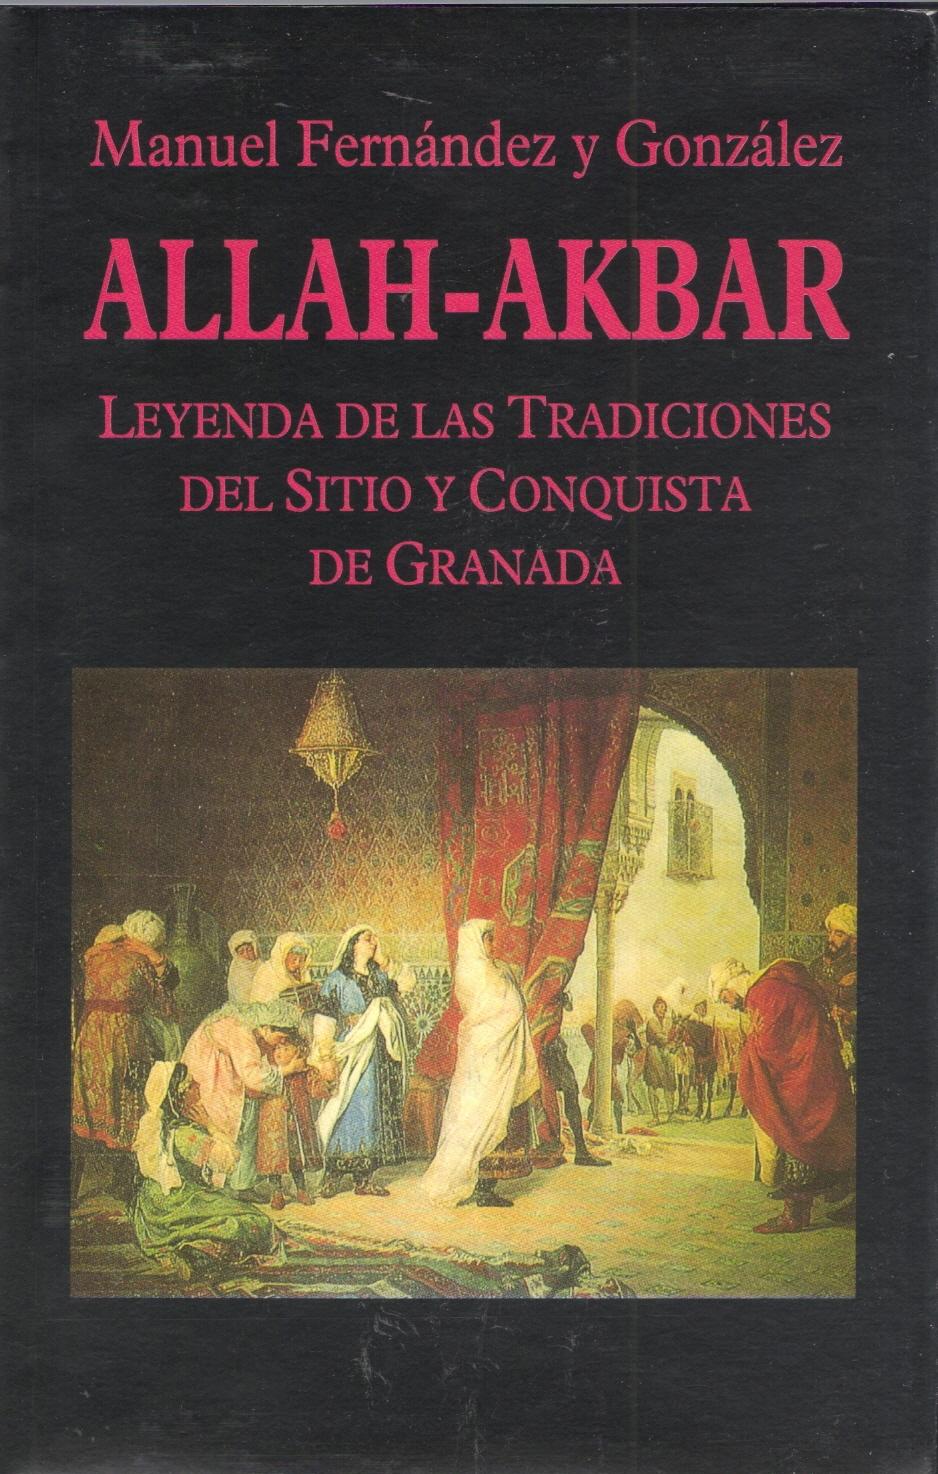 Allah-Akbar. Leyenda de las tradiciones del sitio y conquista de Granada